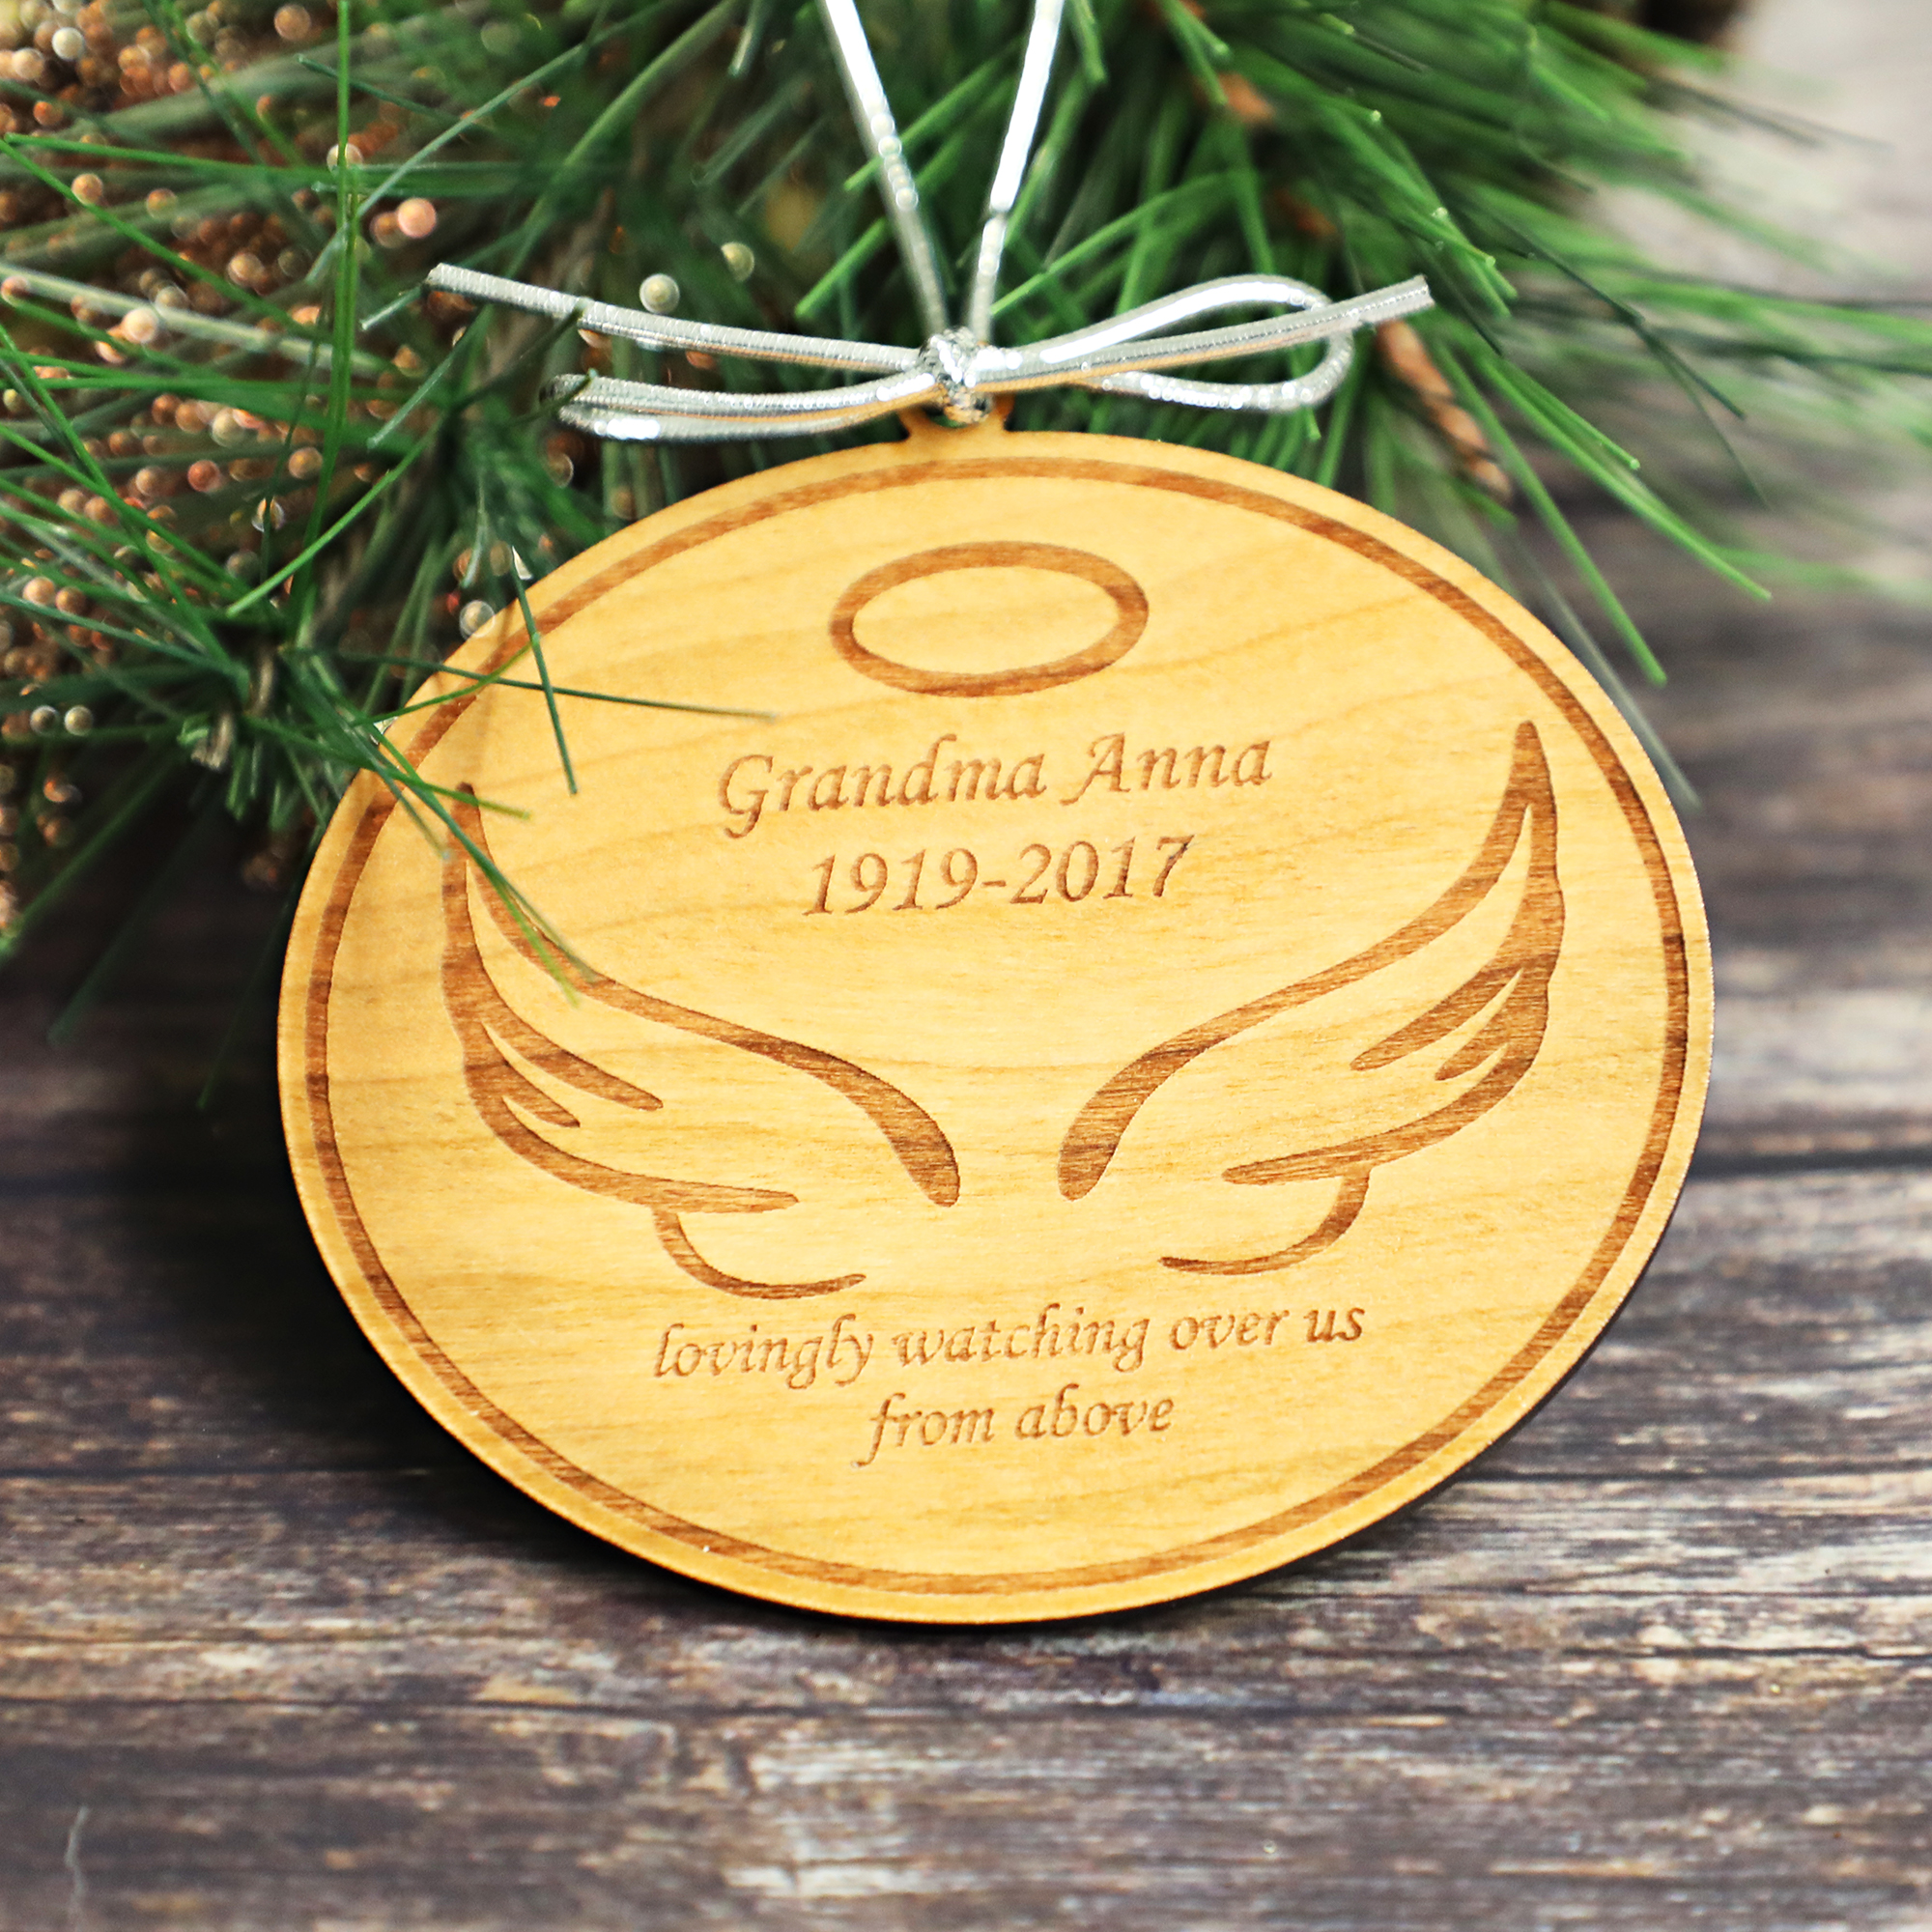 Personalized memorial ornament files Wings Memorial Christmas Ornament files